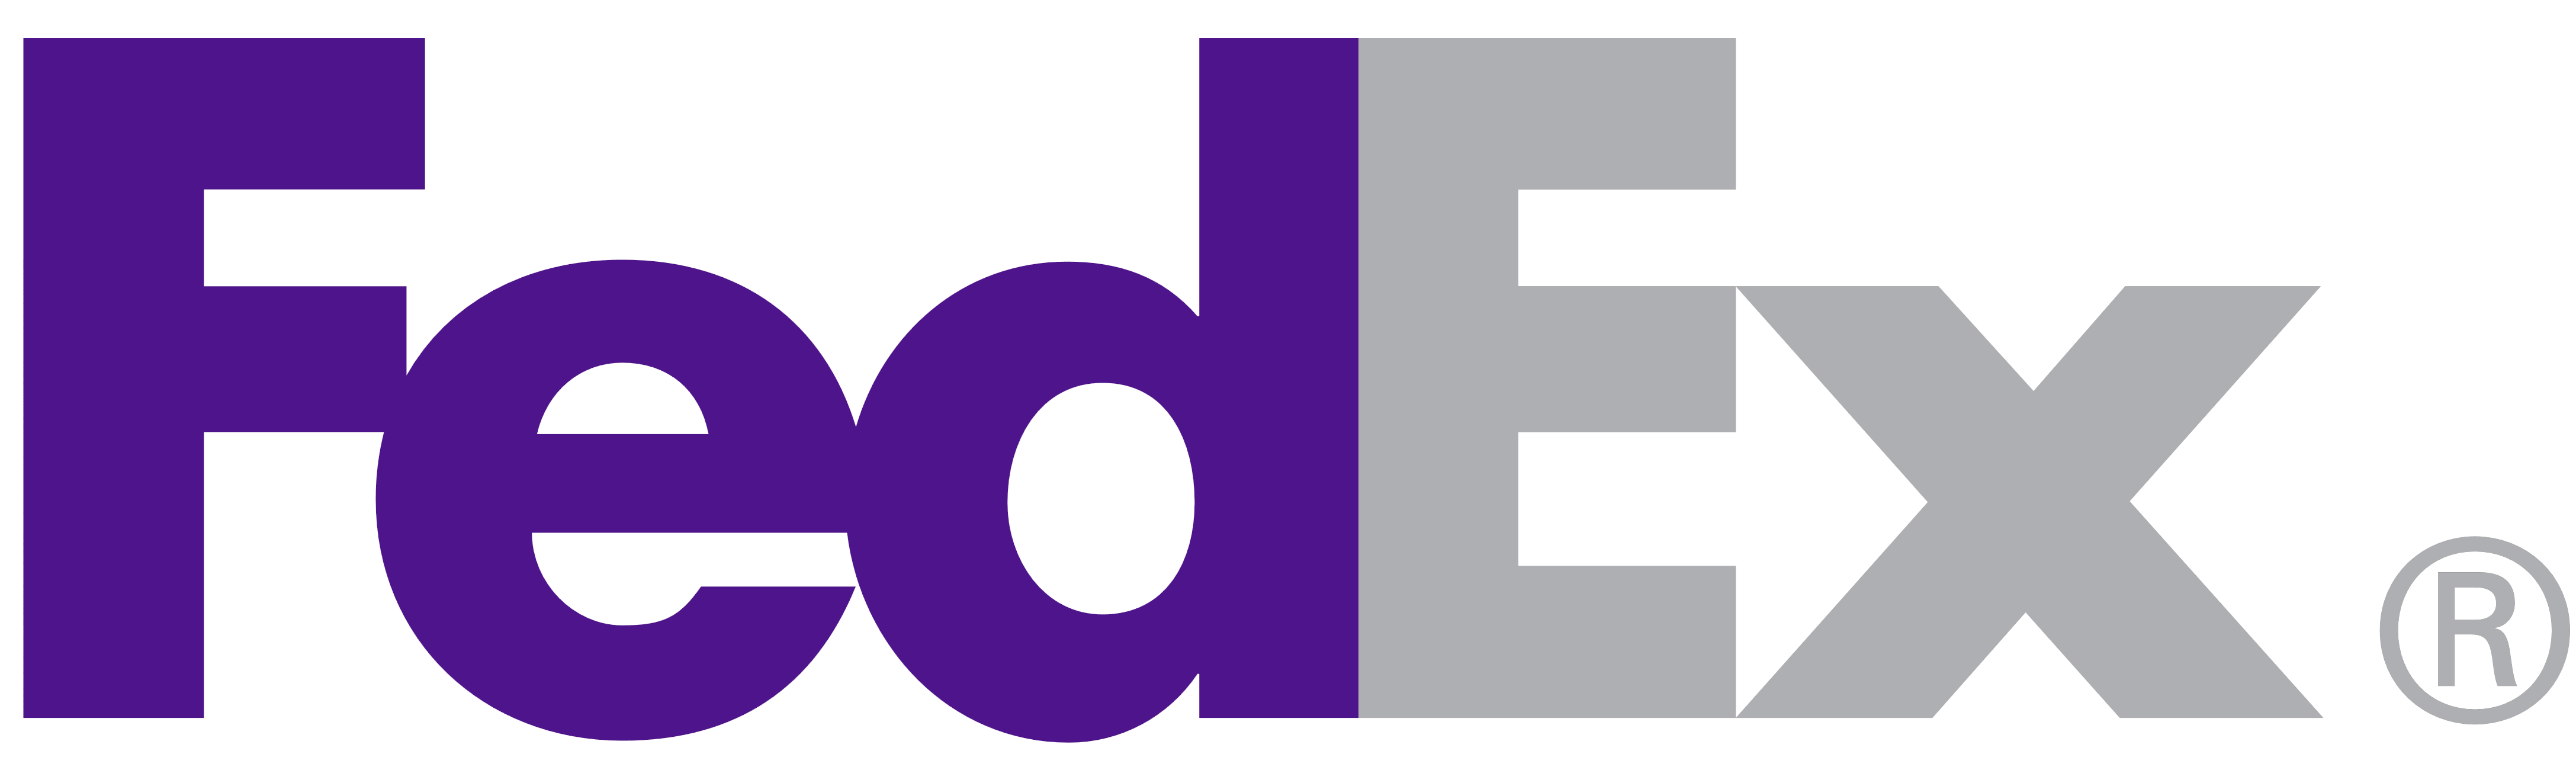 FedEx Official Logo - FedEx – Logos Download